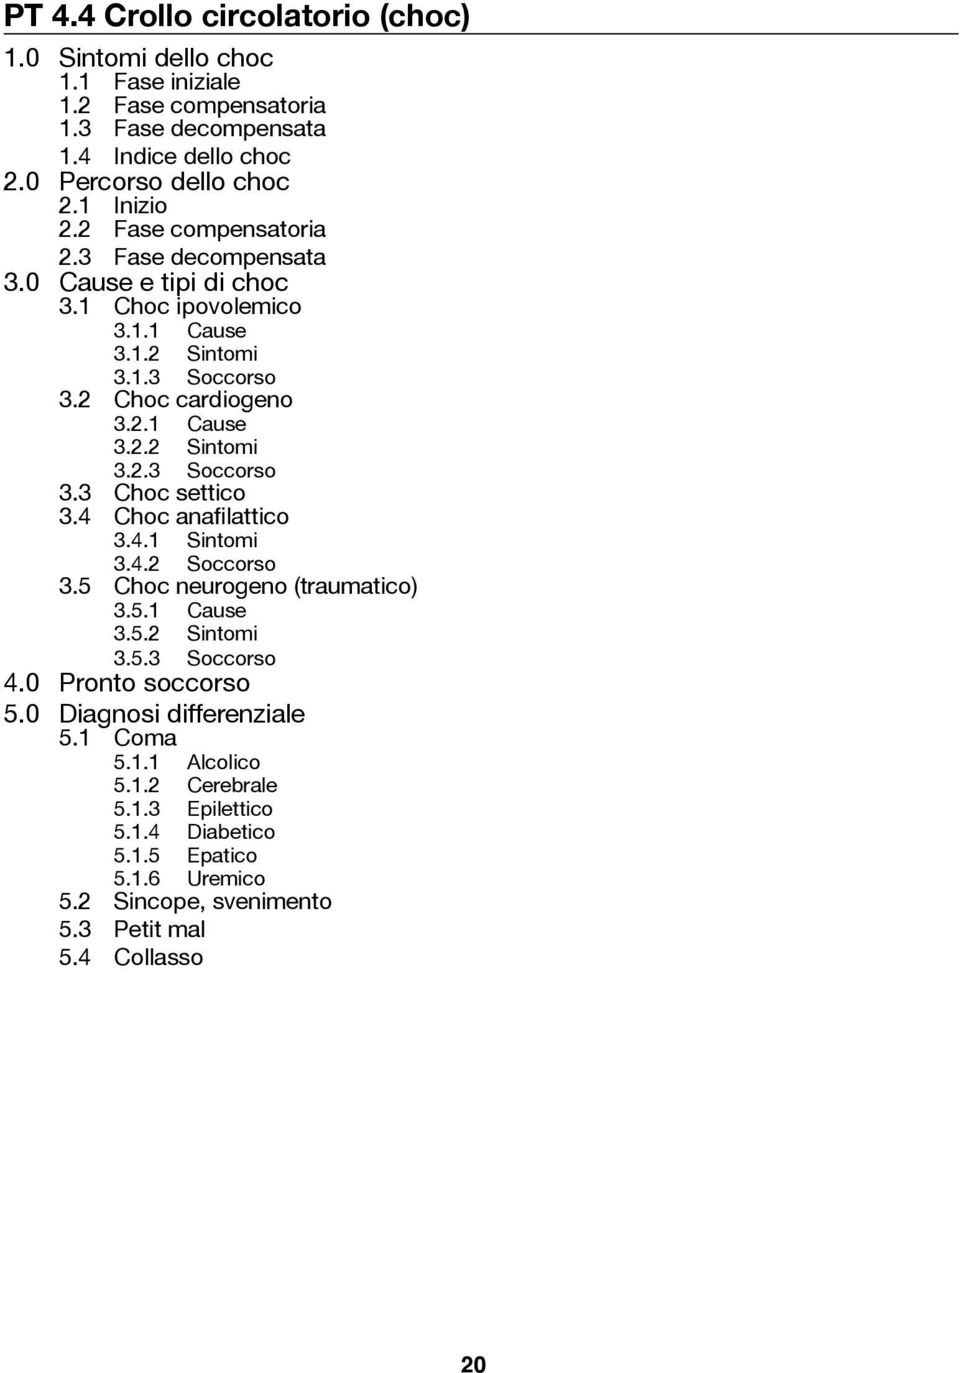 4 Choc anafilattico 3.4.1 Sintomi 3.4.2 Soccorso 3.5 Choc neurogeno (traumatico) 3.5.1 Cause 3.5.2 Sintomi 3.5.3 Soccorso 4.0 Pronto soccorso 5.0 Diagnosi differenziale 5.